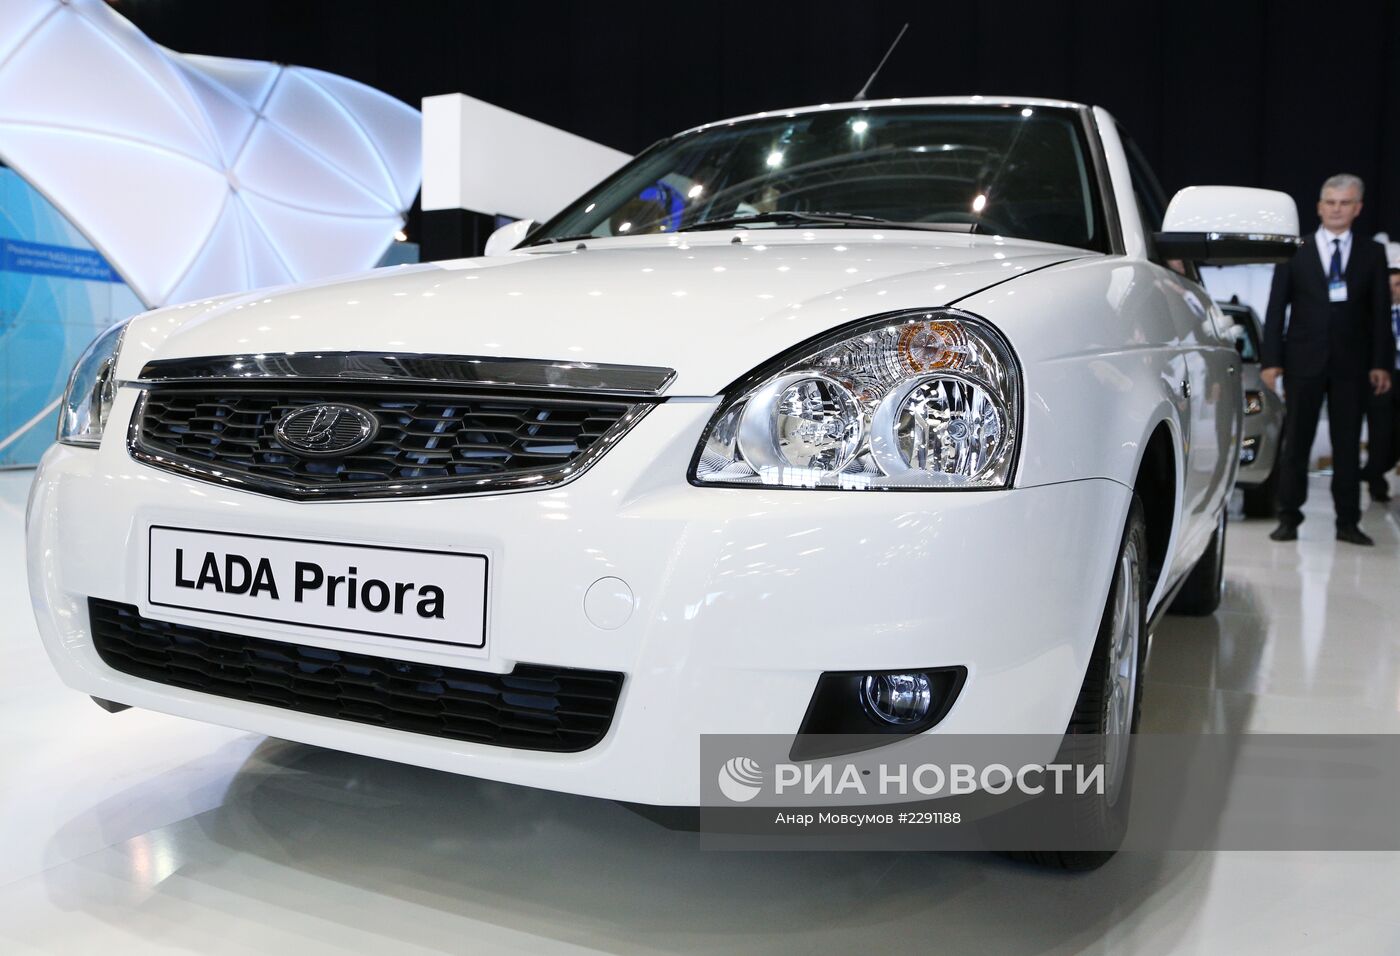 Премьера обновленной модели Lada Priora на автосалоне "MOTOREXPO 2013" в Тольятти